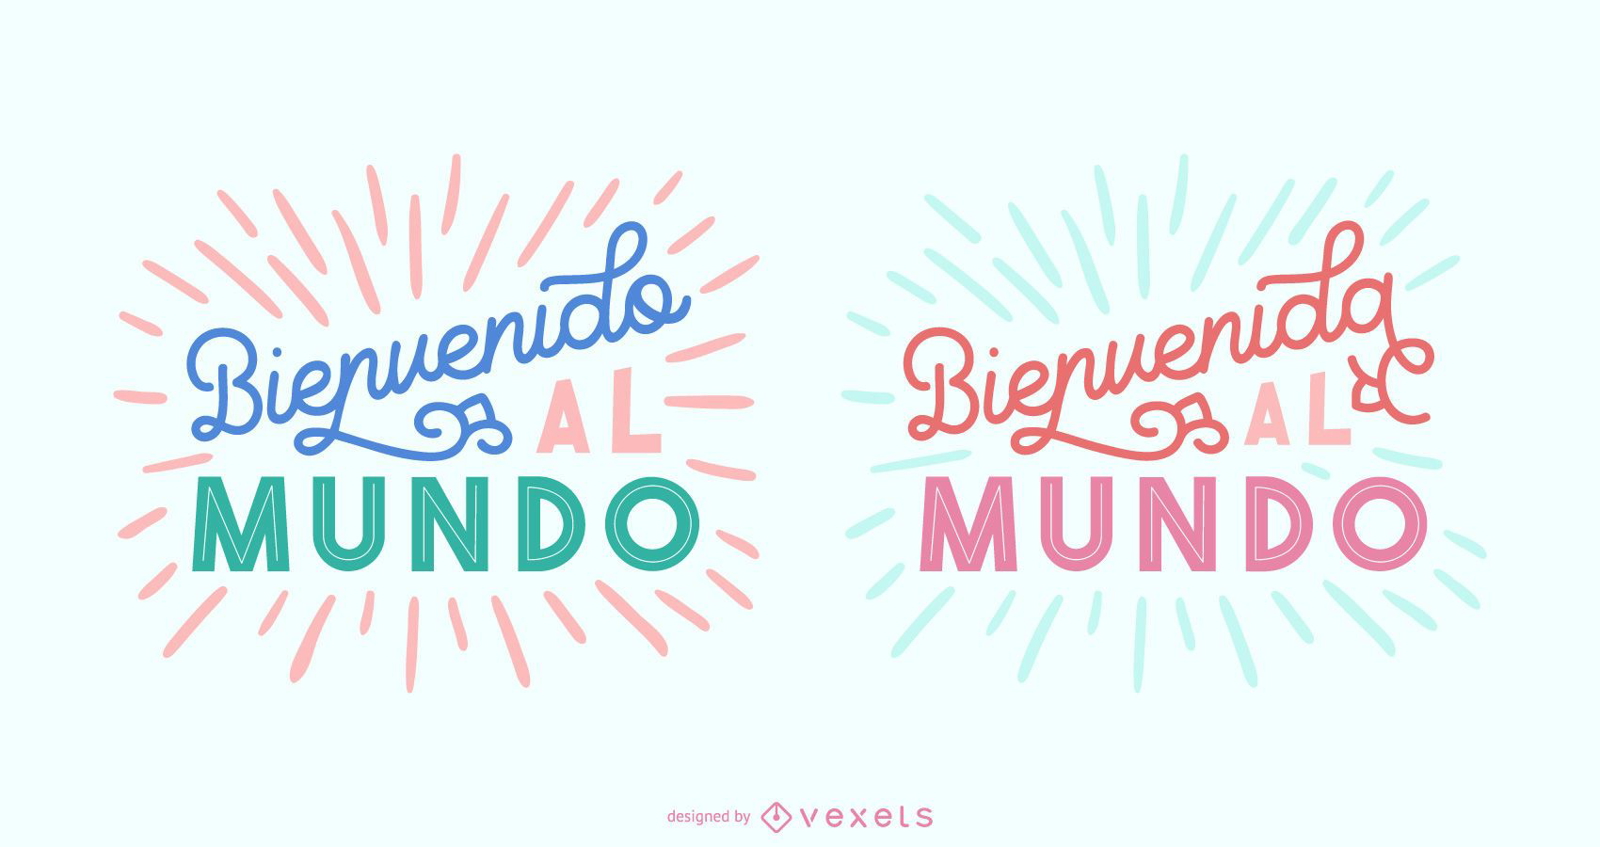 Novo conjunto de banner para bebês com letras em espanhol